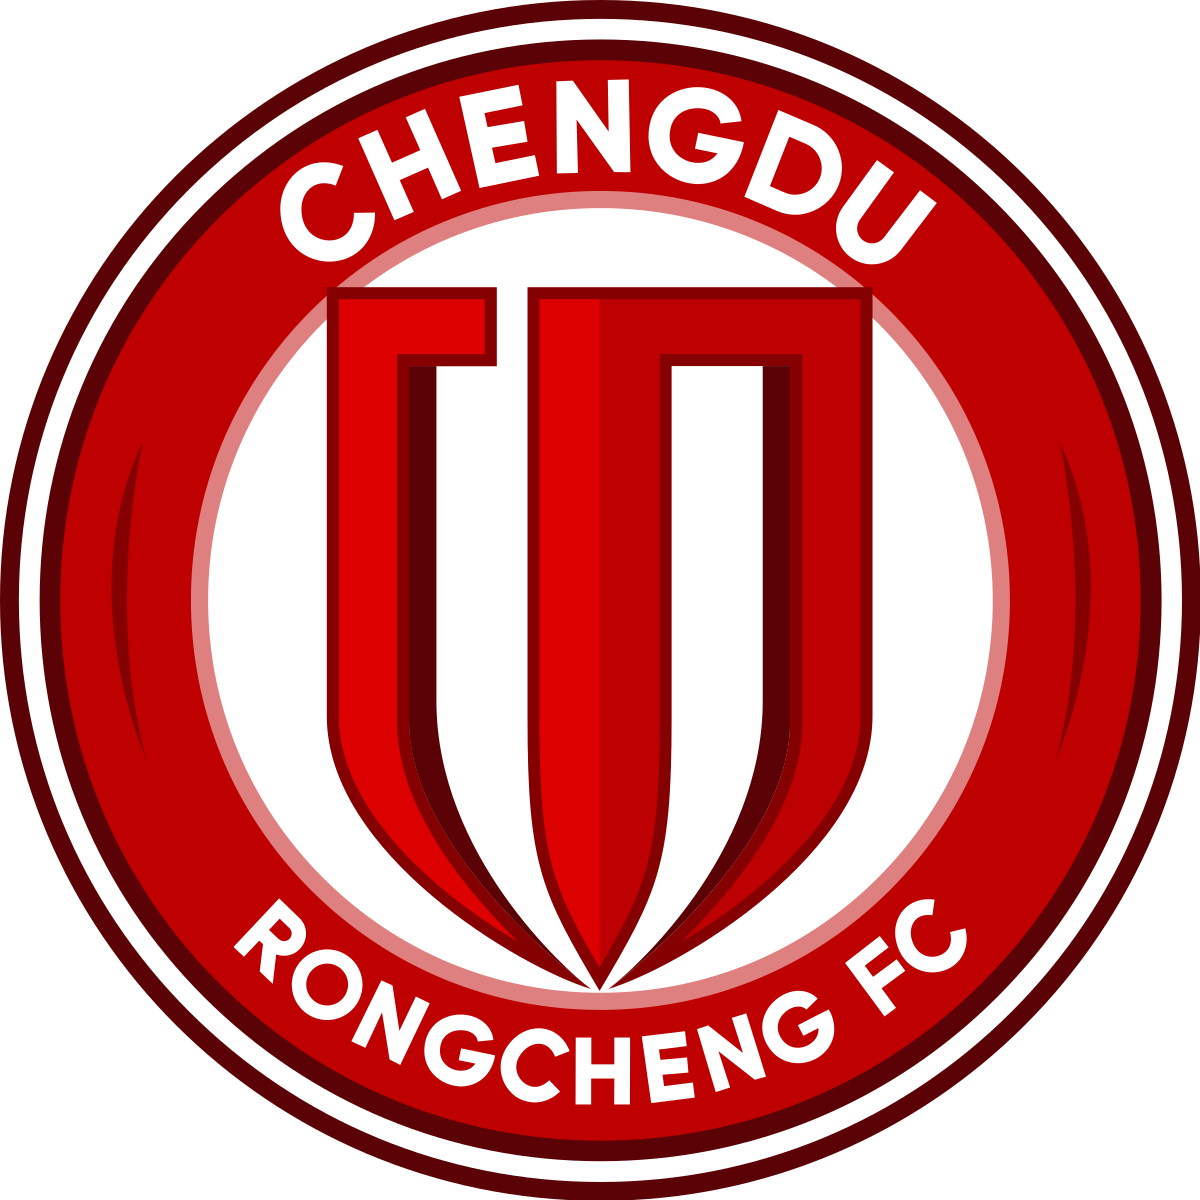  Zhongcheng Village Football Team